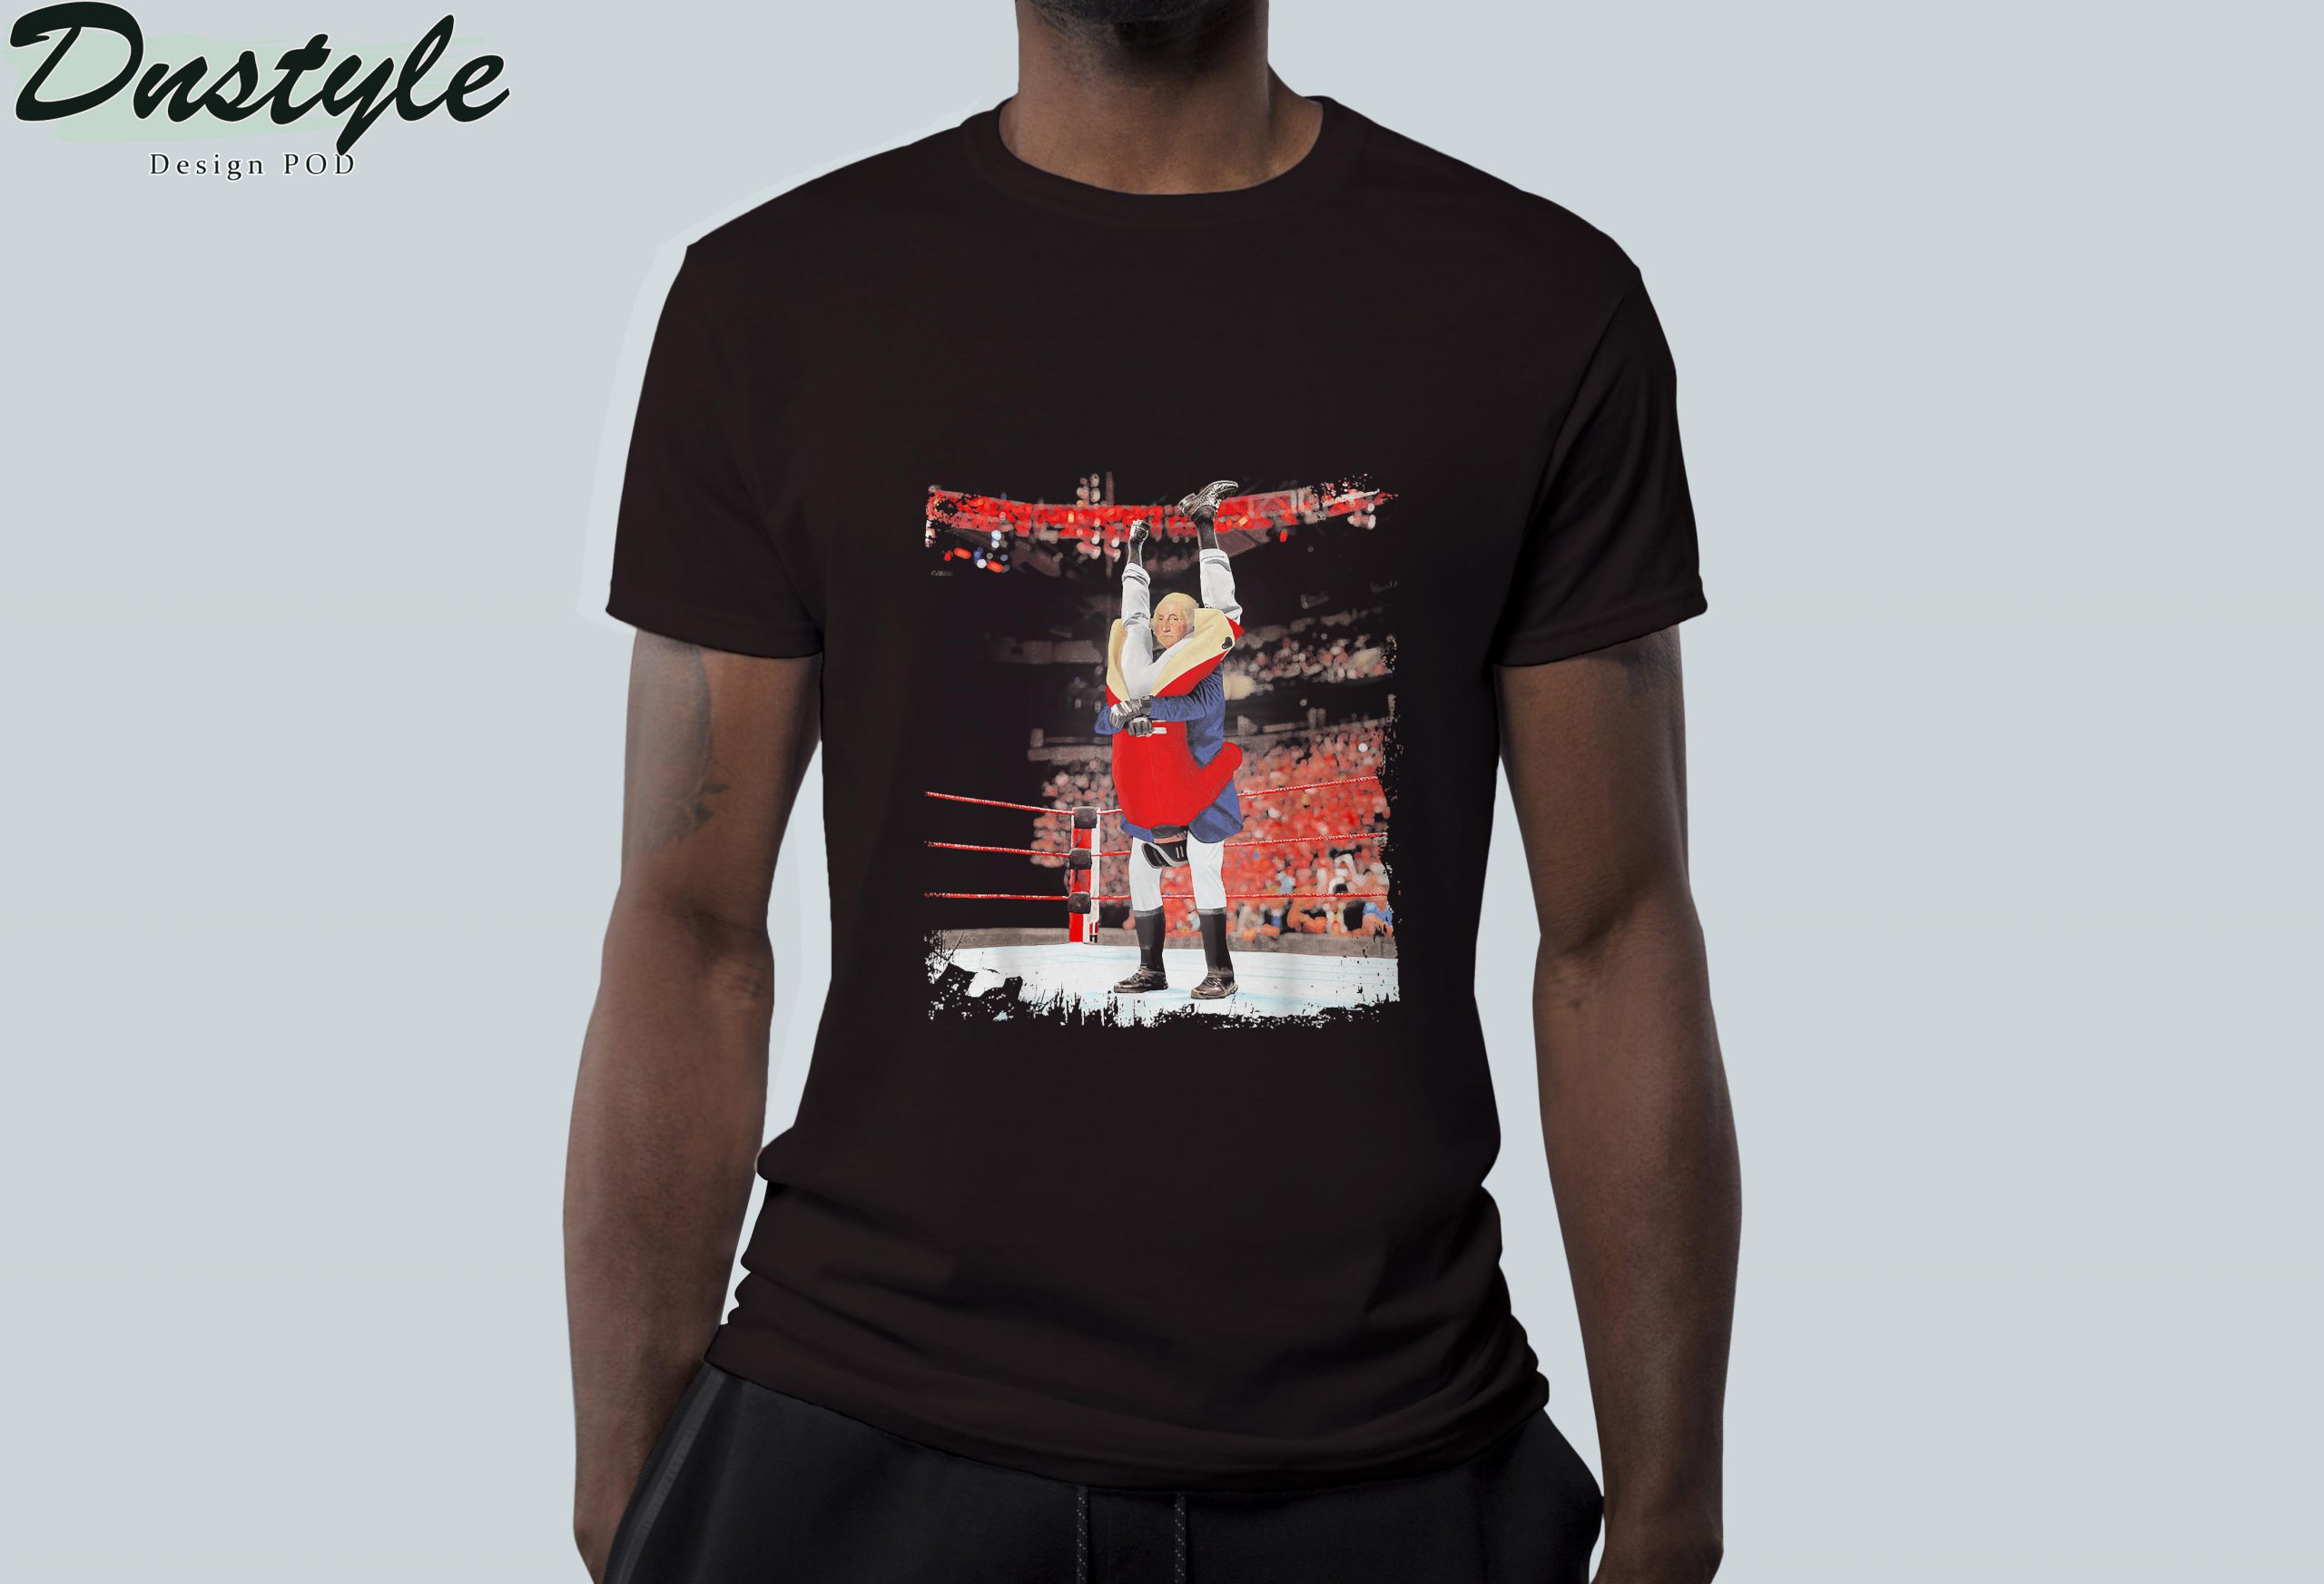 George washington wrestling t-shirt 2